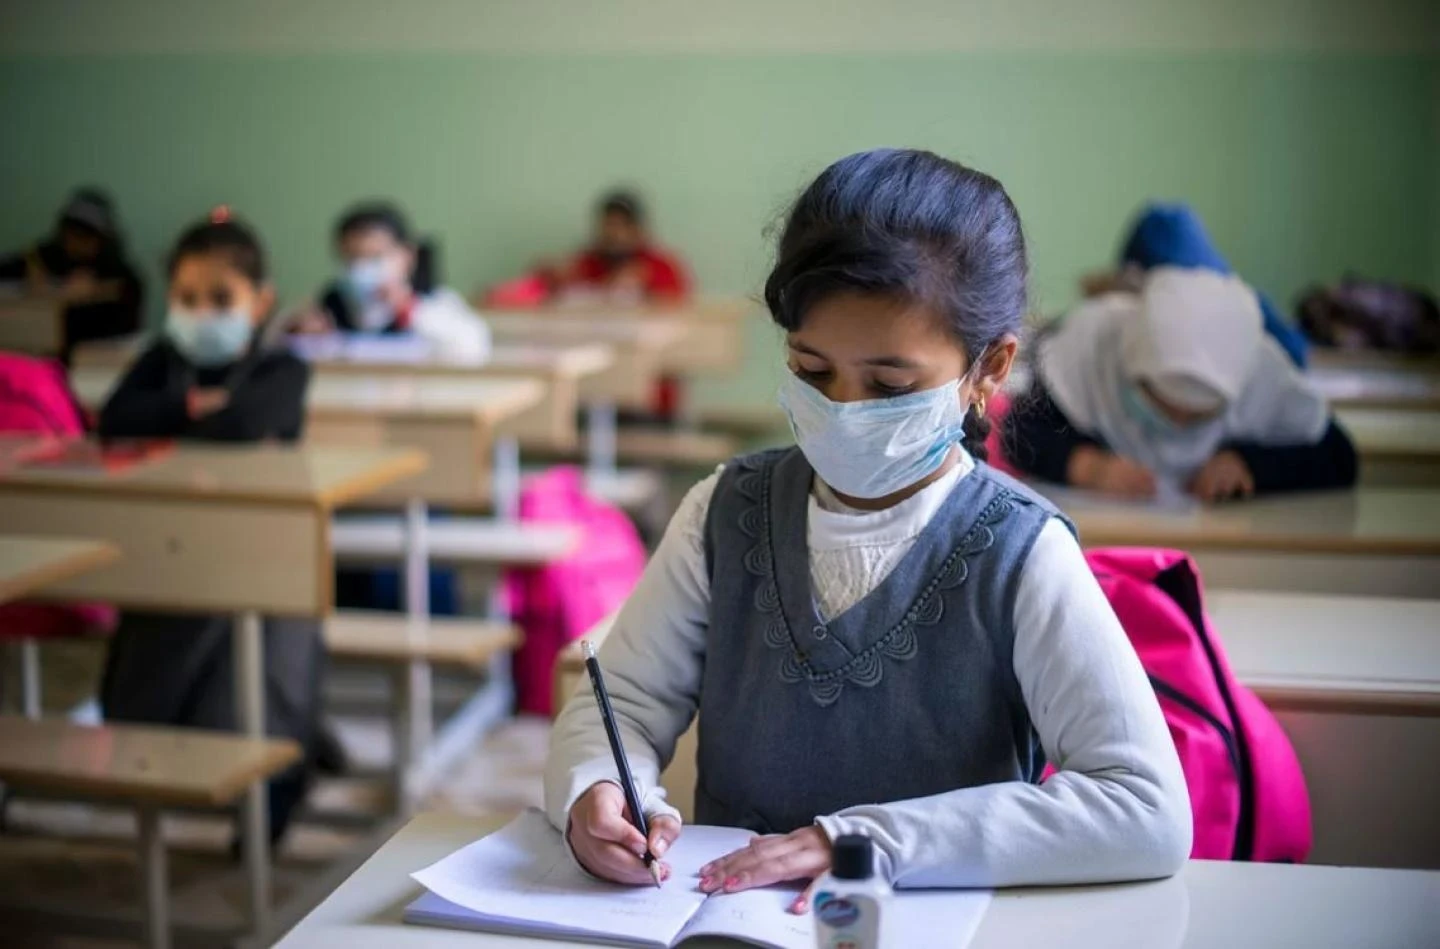 التعليم في سوريا: تحديات وصعوبات في ظل الأزمات